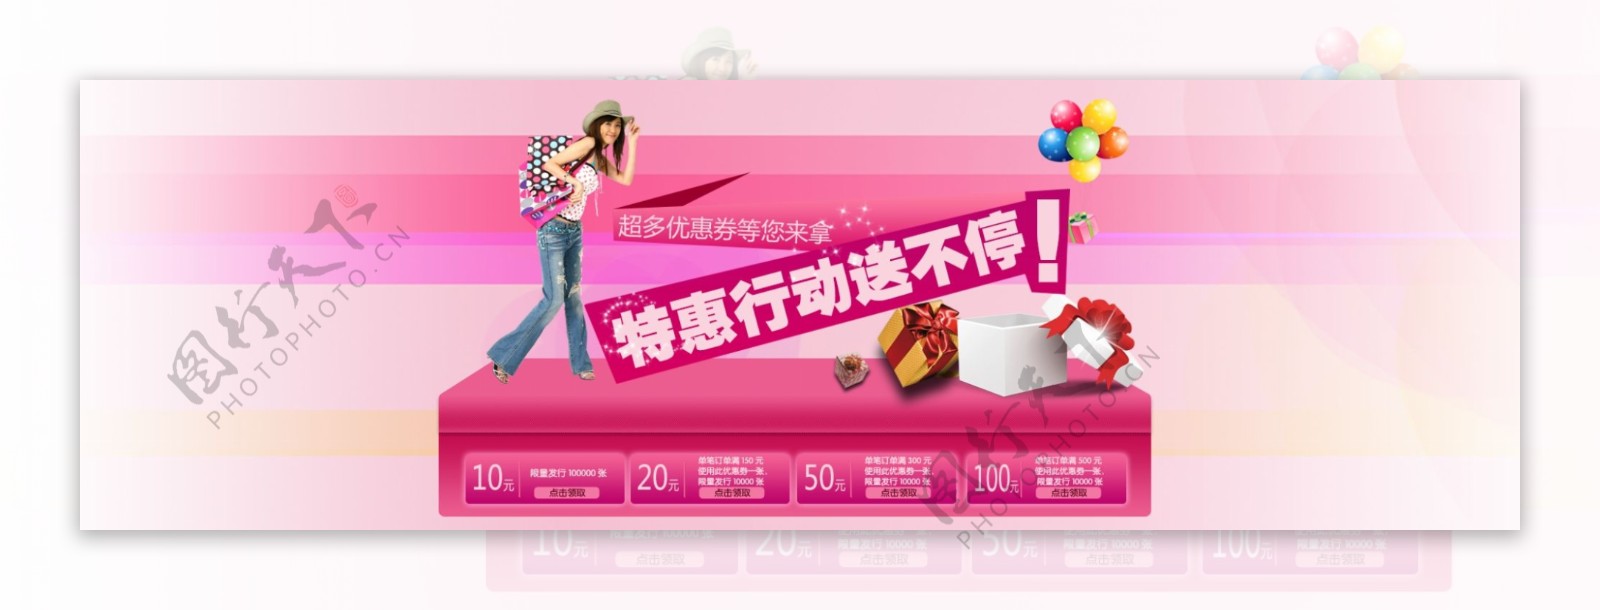 淘宝首页粉色广告设计PSD素材